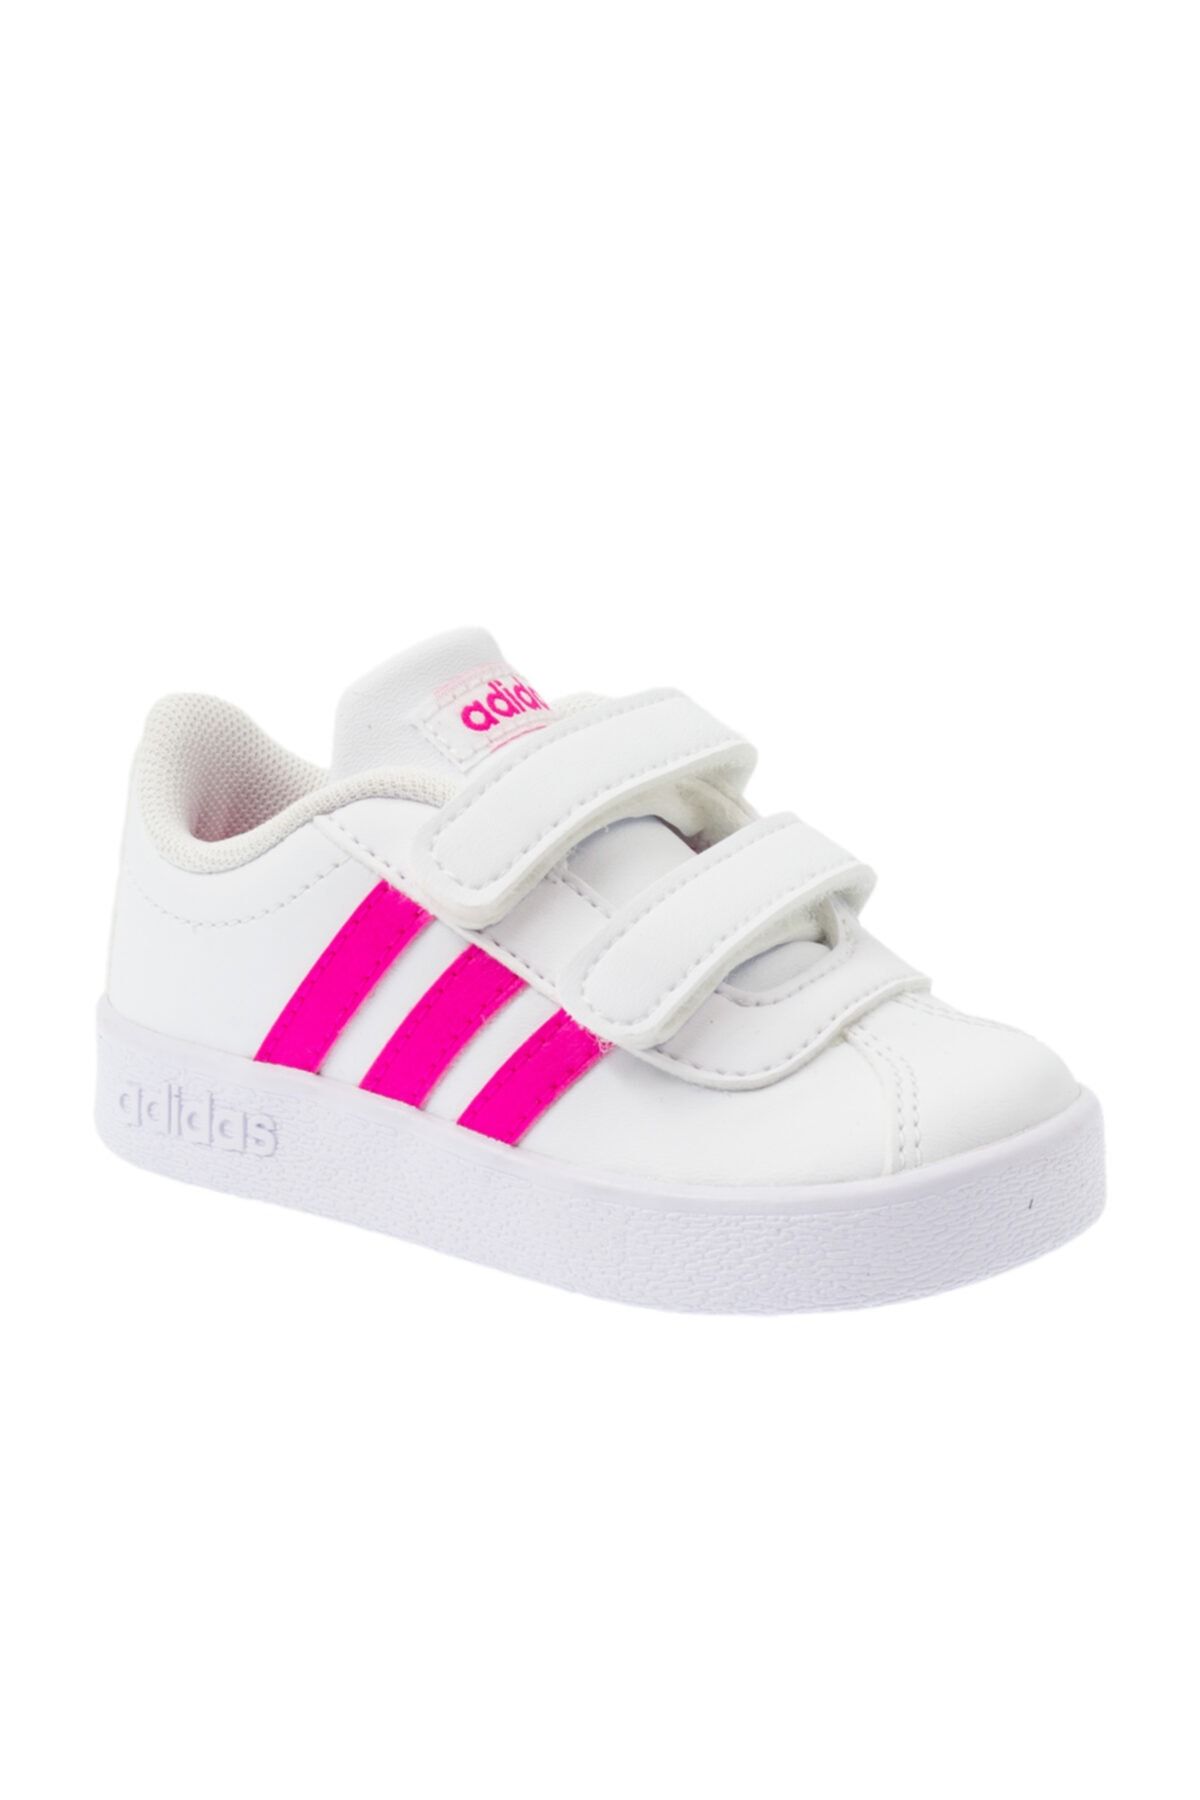 adidas VL COURT 2.0 CMF Pembe Kız Çocuk Sneaker Ayakkabı 100536376